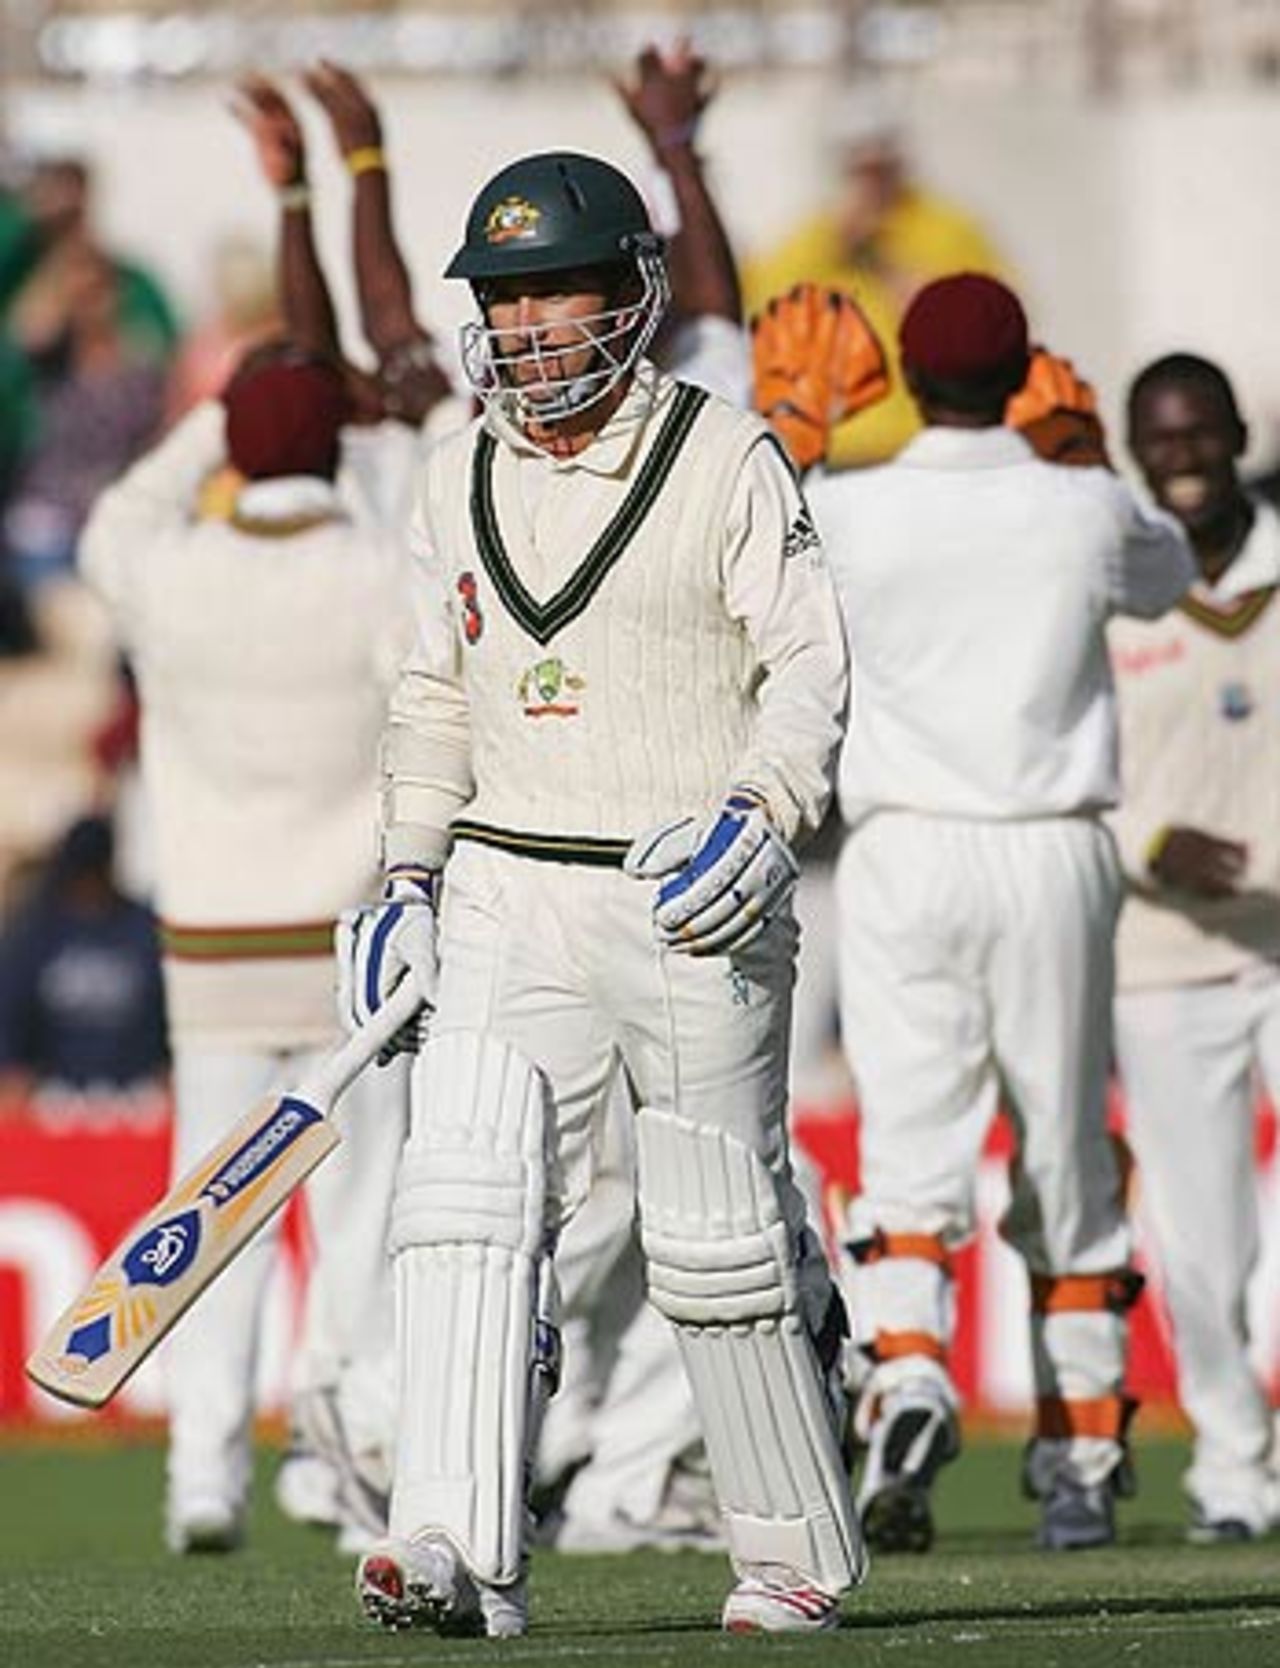 Justin Langer trudges back after being dismissed for 99, Australia v West Indies, 3rd Test, Adelaide, 2nd day, November 26, 2005